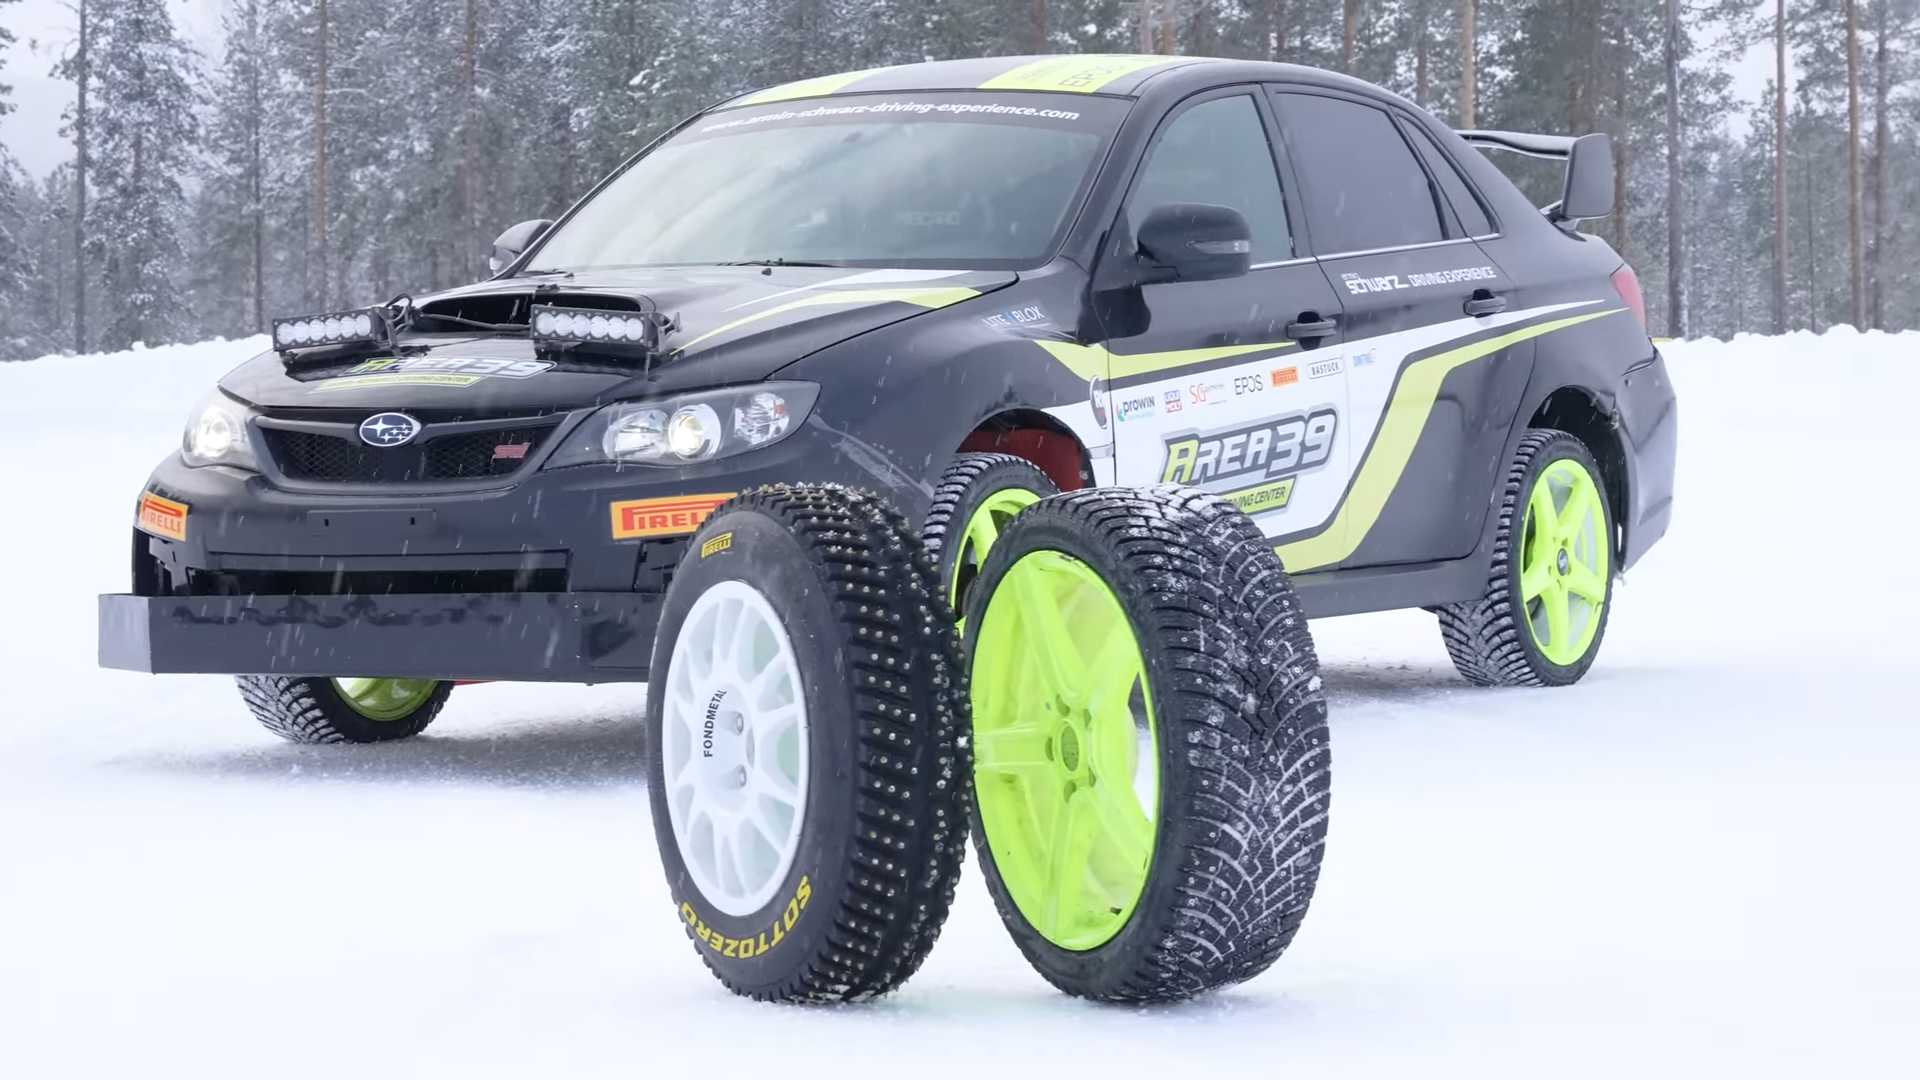 La comparaison des pneus cloutés montre une incroyable adhérence sur la glace avec les pneus de rallye WRC